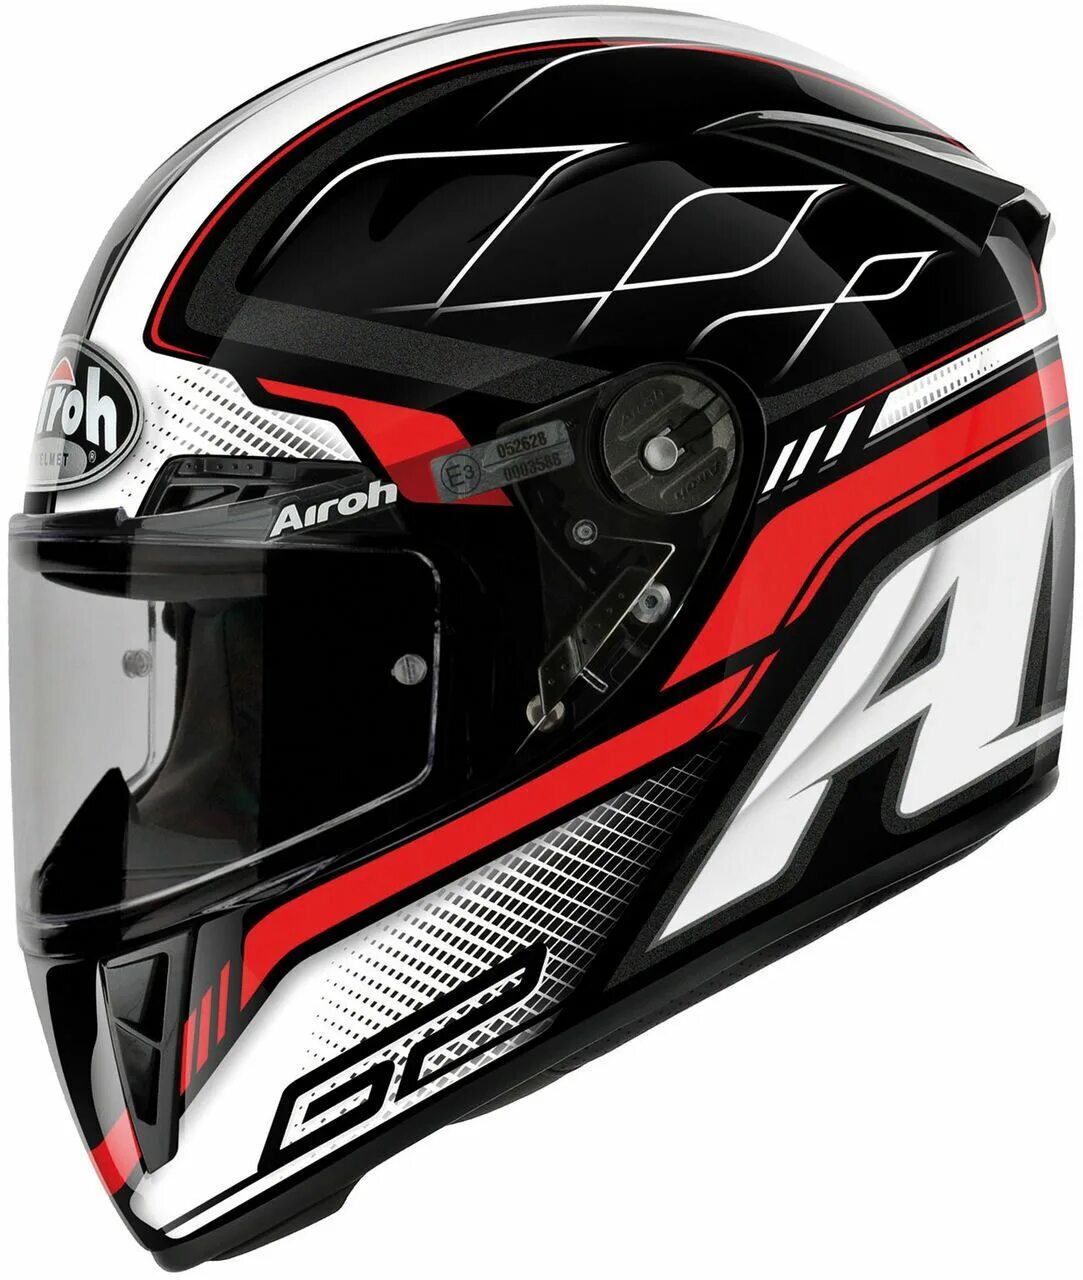 Мототорг. Шлем Airoh 97. Airoh GP 550 New line. Airoh e3 052696. Airoh Helmet Bargy Design.